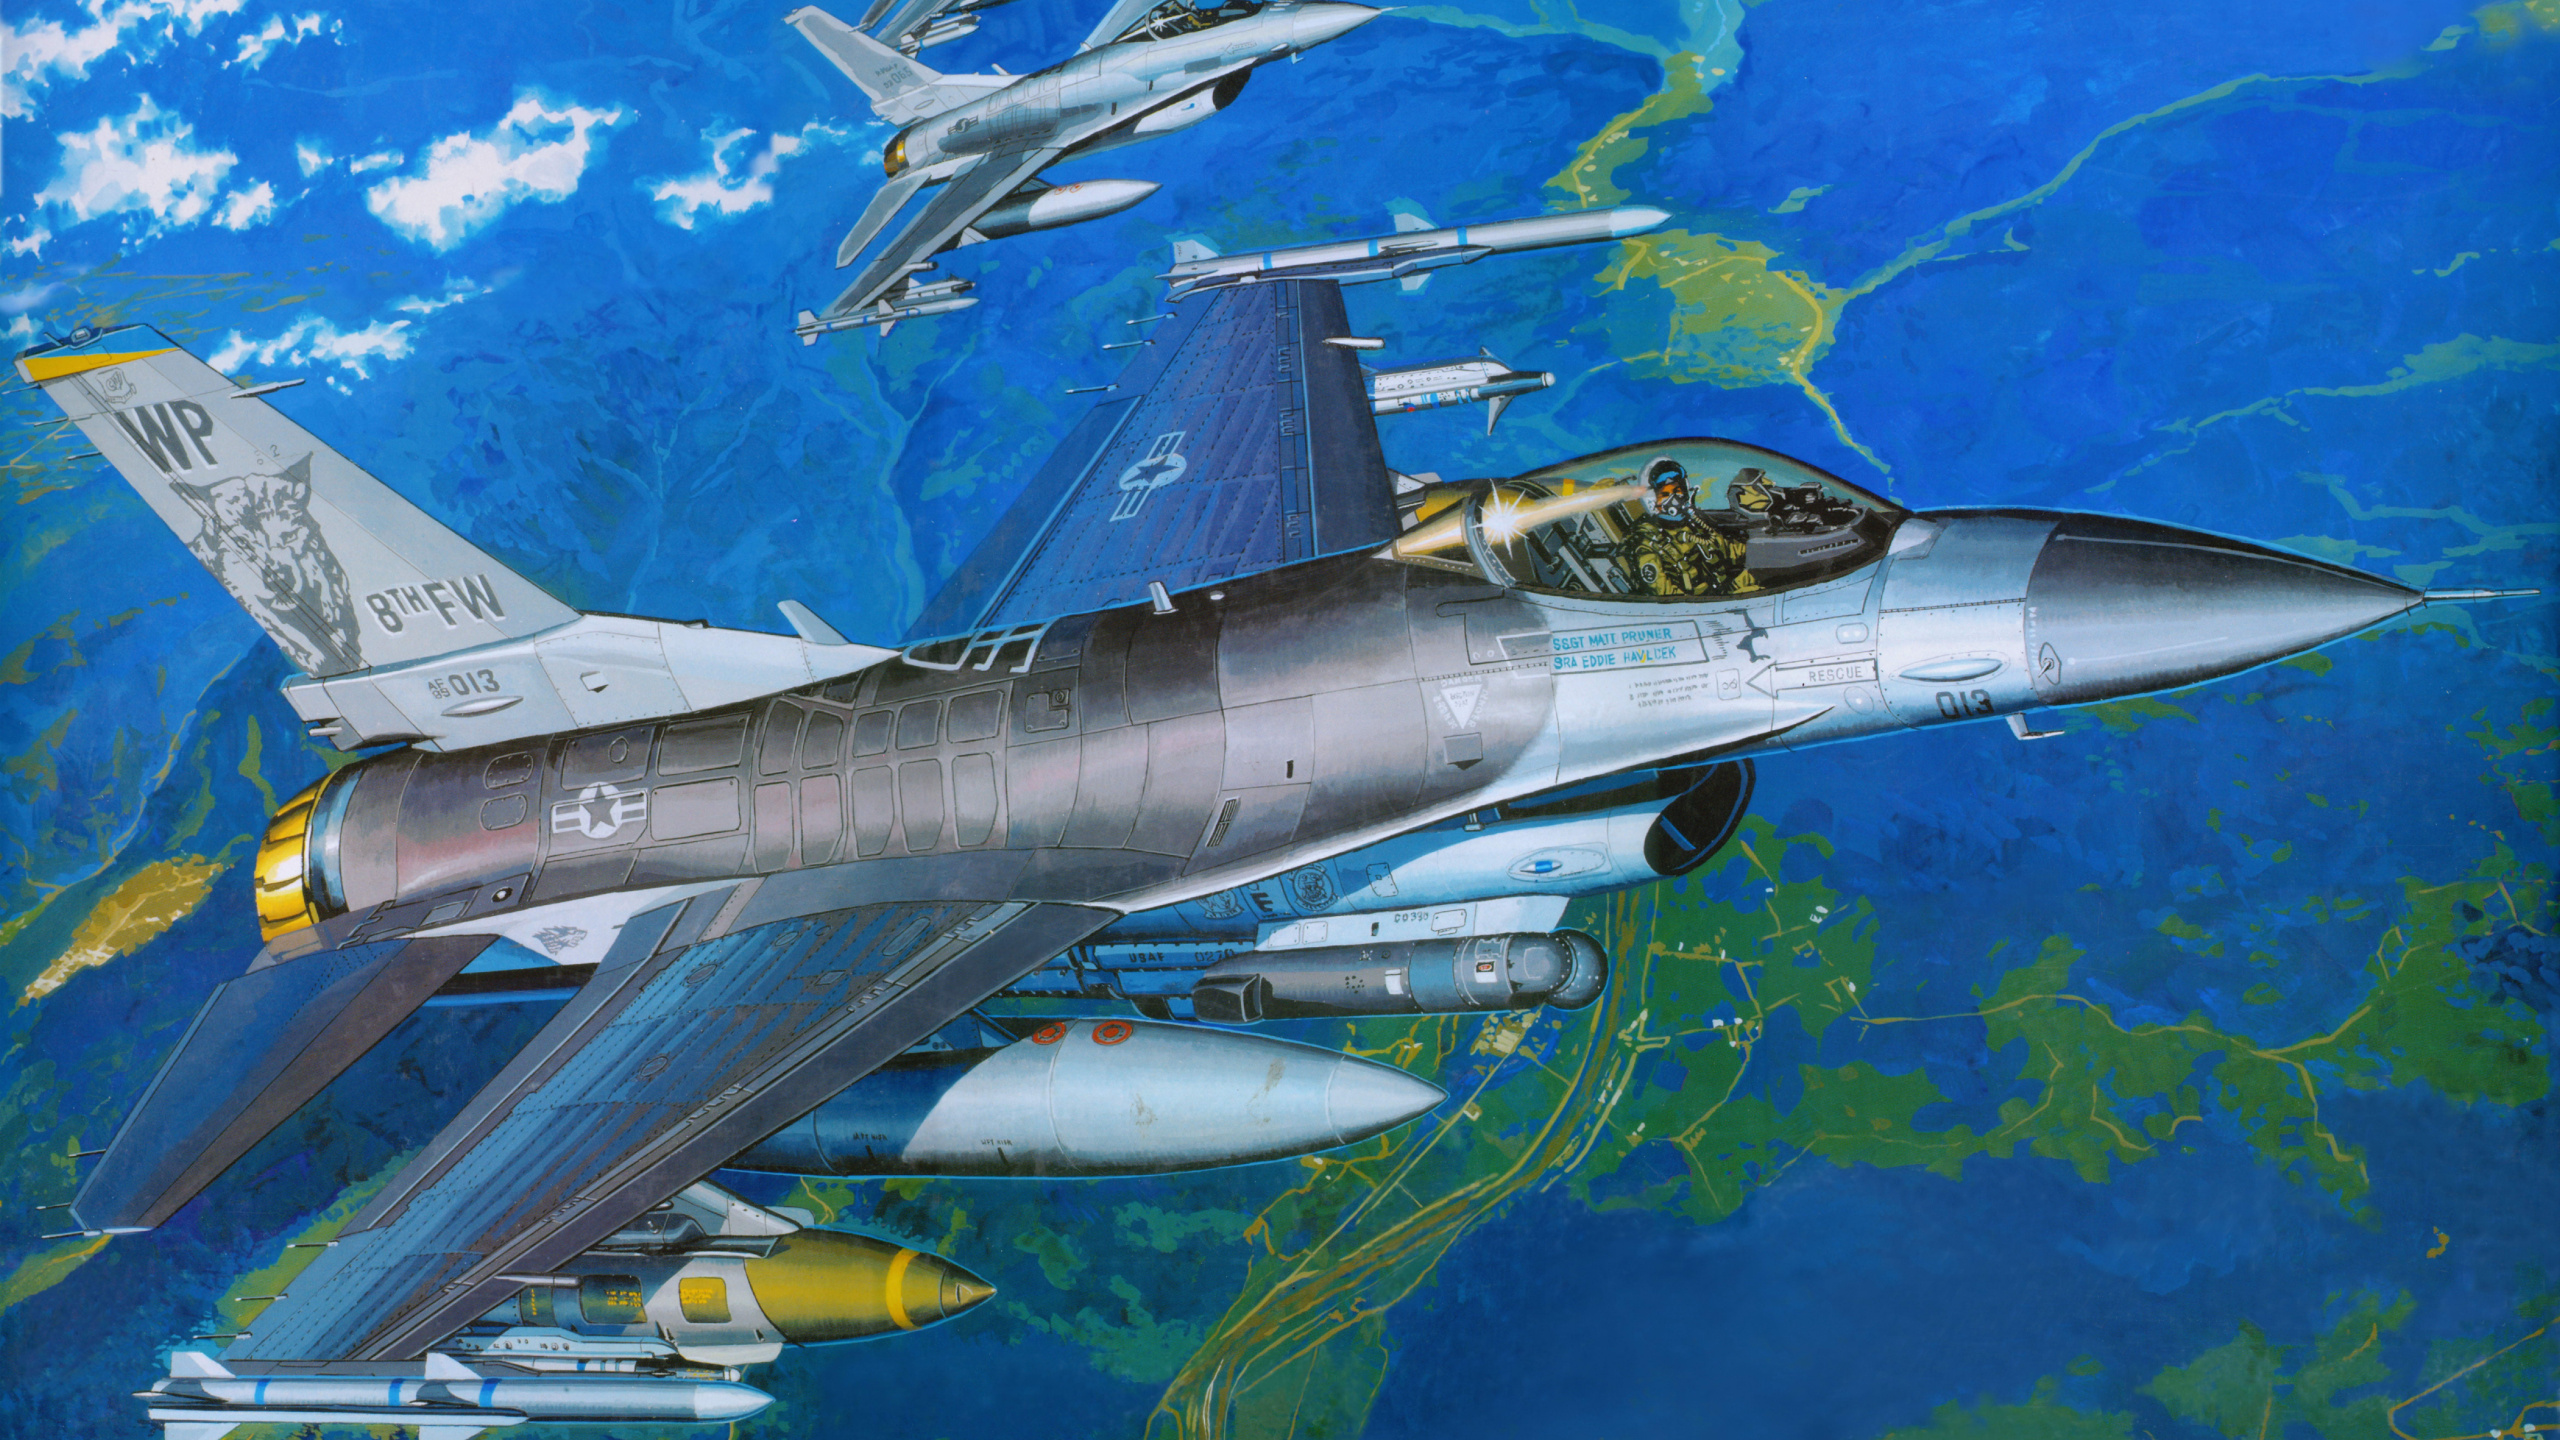 塑料模型, 航空, 空军, 军用飞机, 喷气式飞机 壁纸 2560x1440 允许